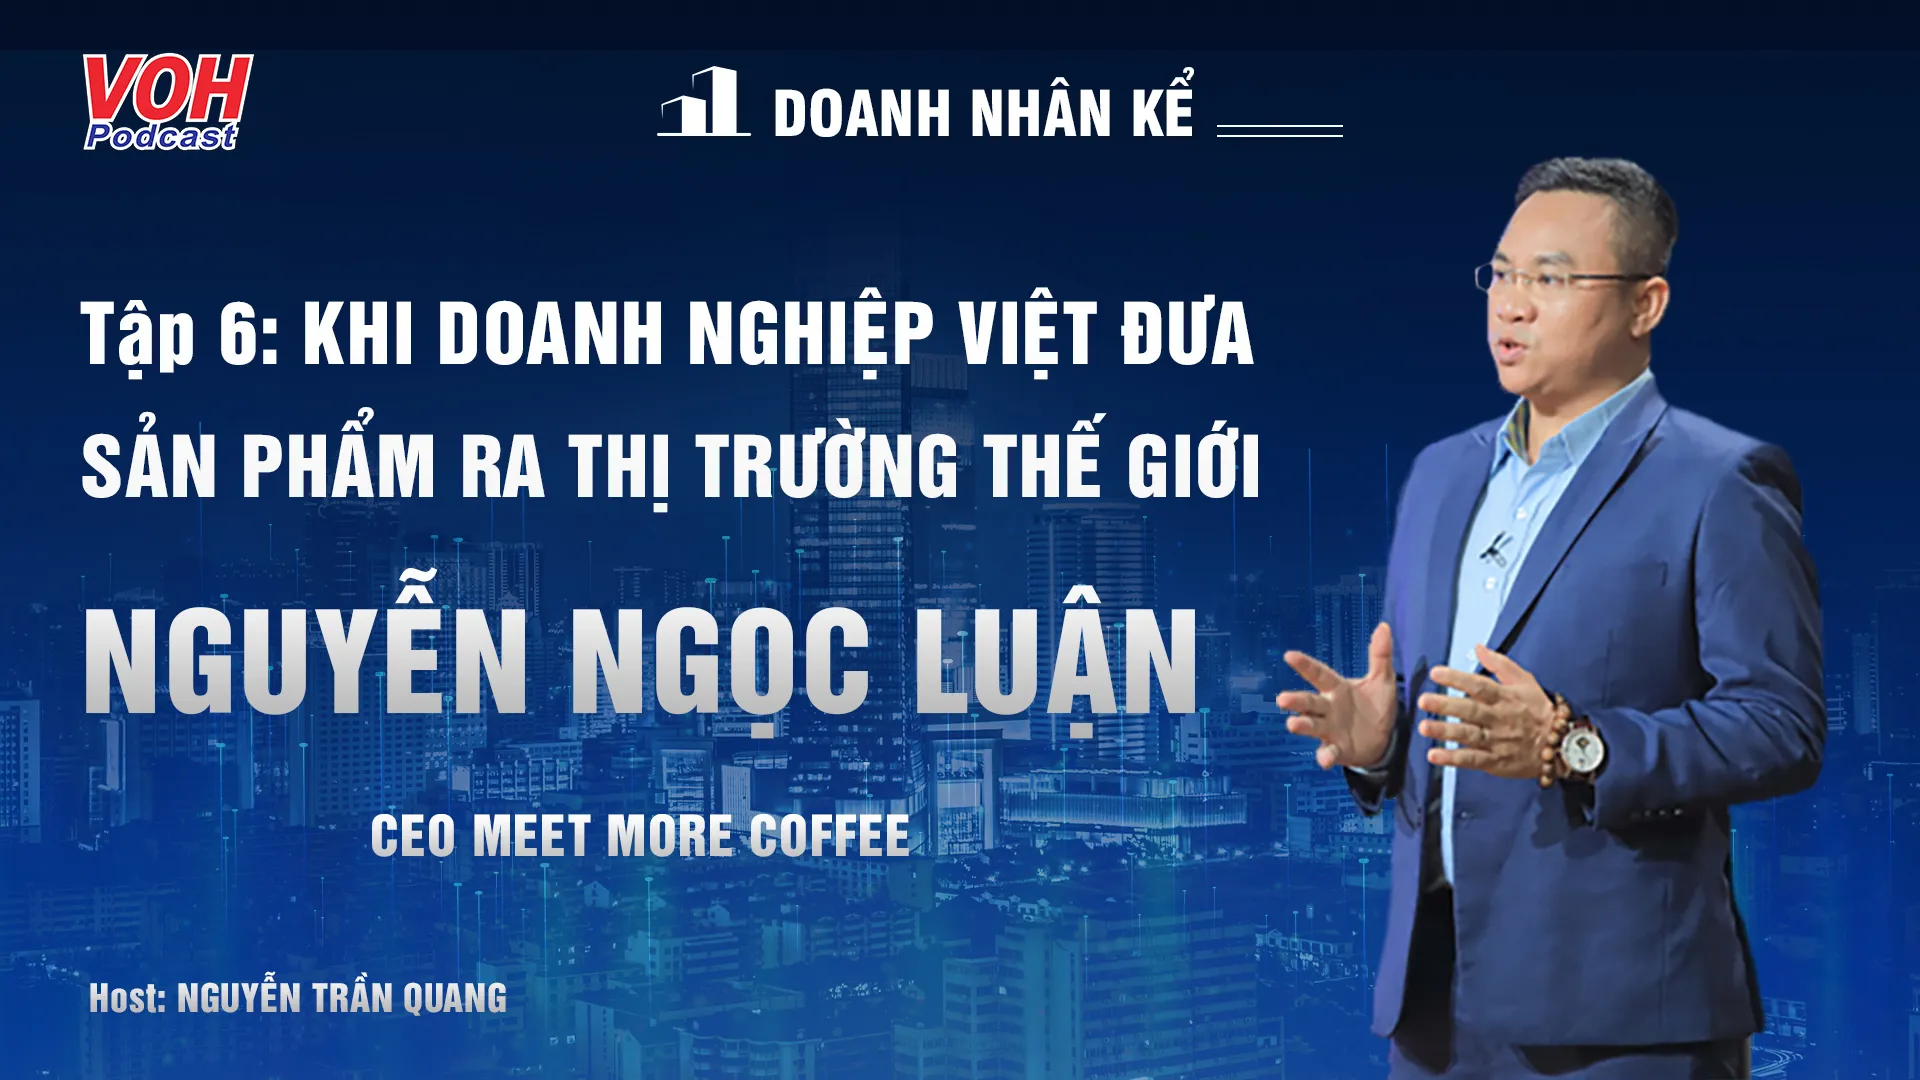 CEO Nguyễn Ngọc Luận: Hành trình xây dựng một thương hiệu | DNK #6